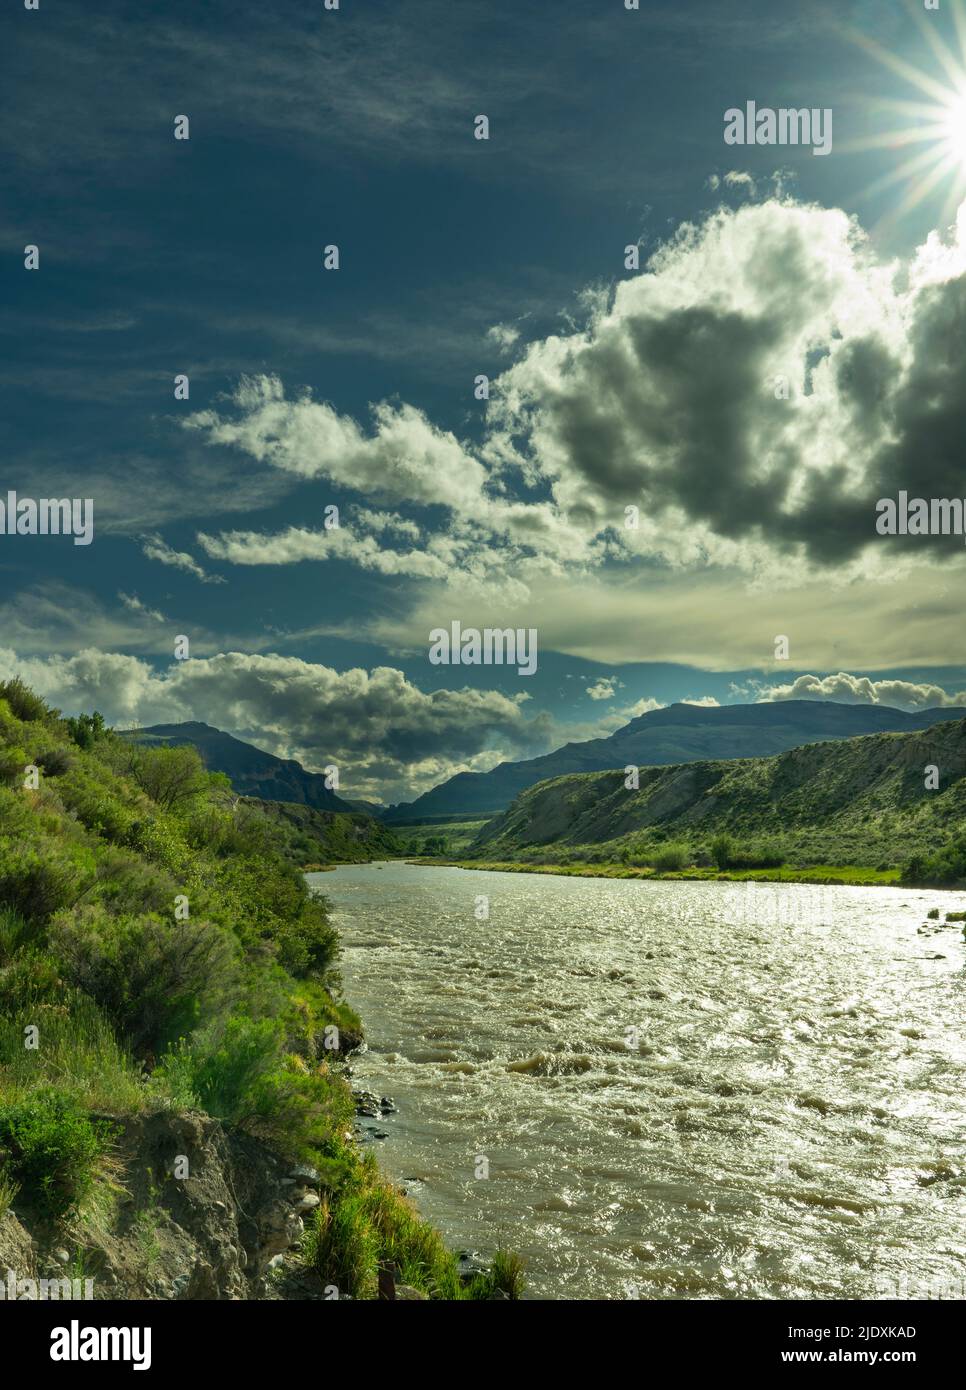 Una tempesta sul fiume Shoshone a Cody Wyoming. Ammira un'esplosione di sole con le nuvole scure nel cielo. Il fiume sta correndo velocemente guardando verso Yellowstone. Foto Stock